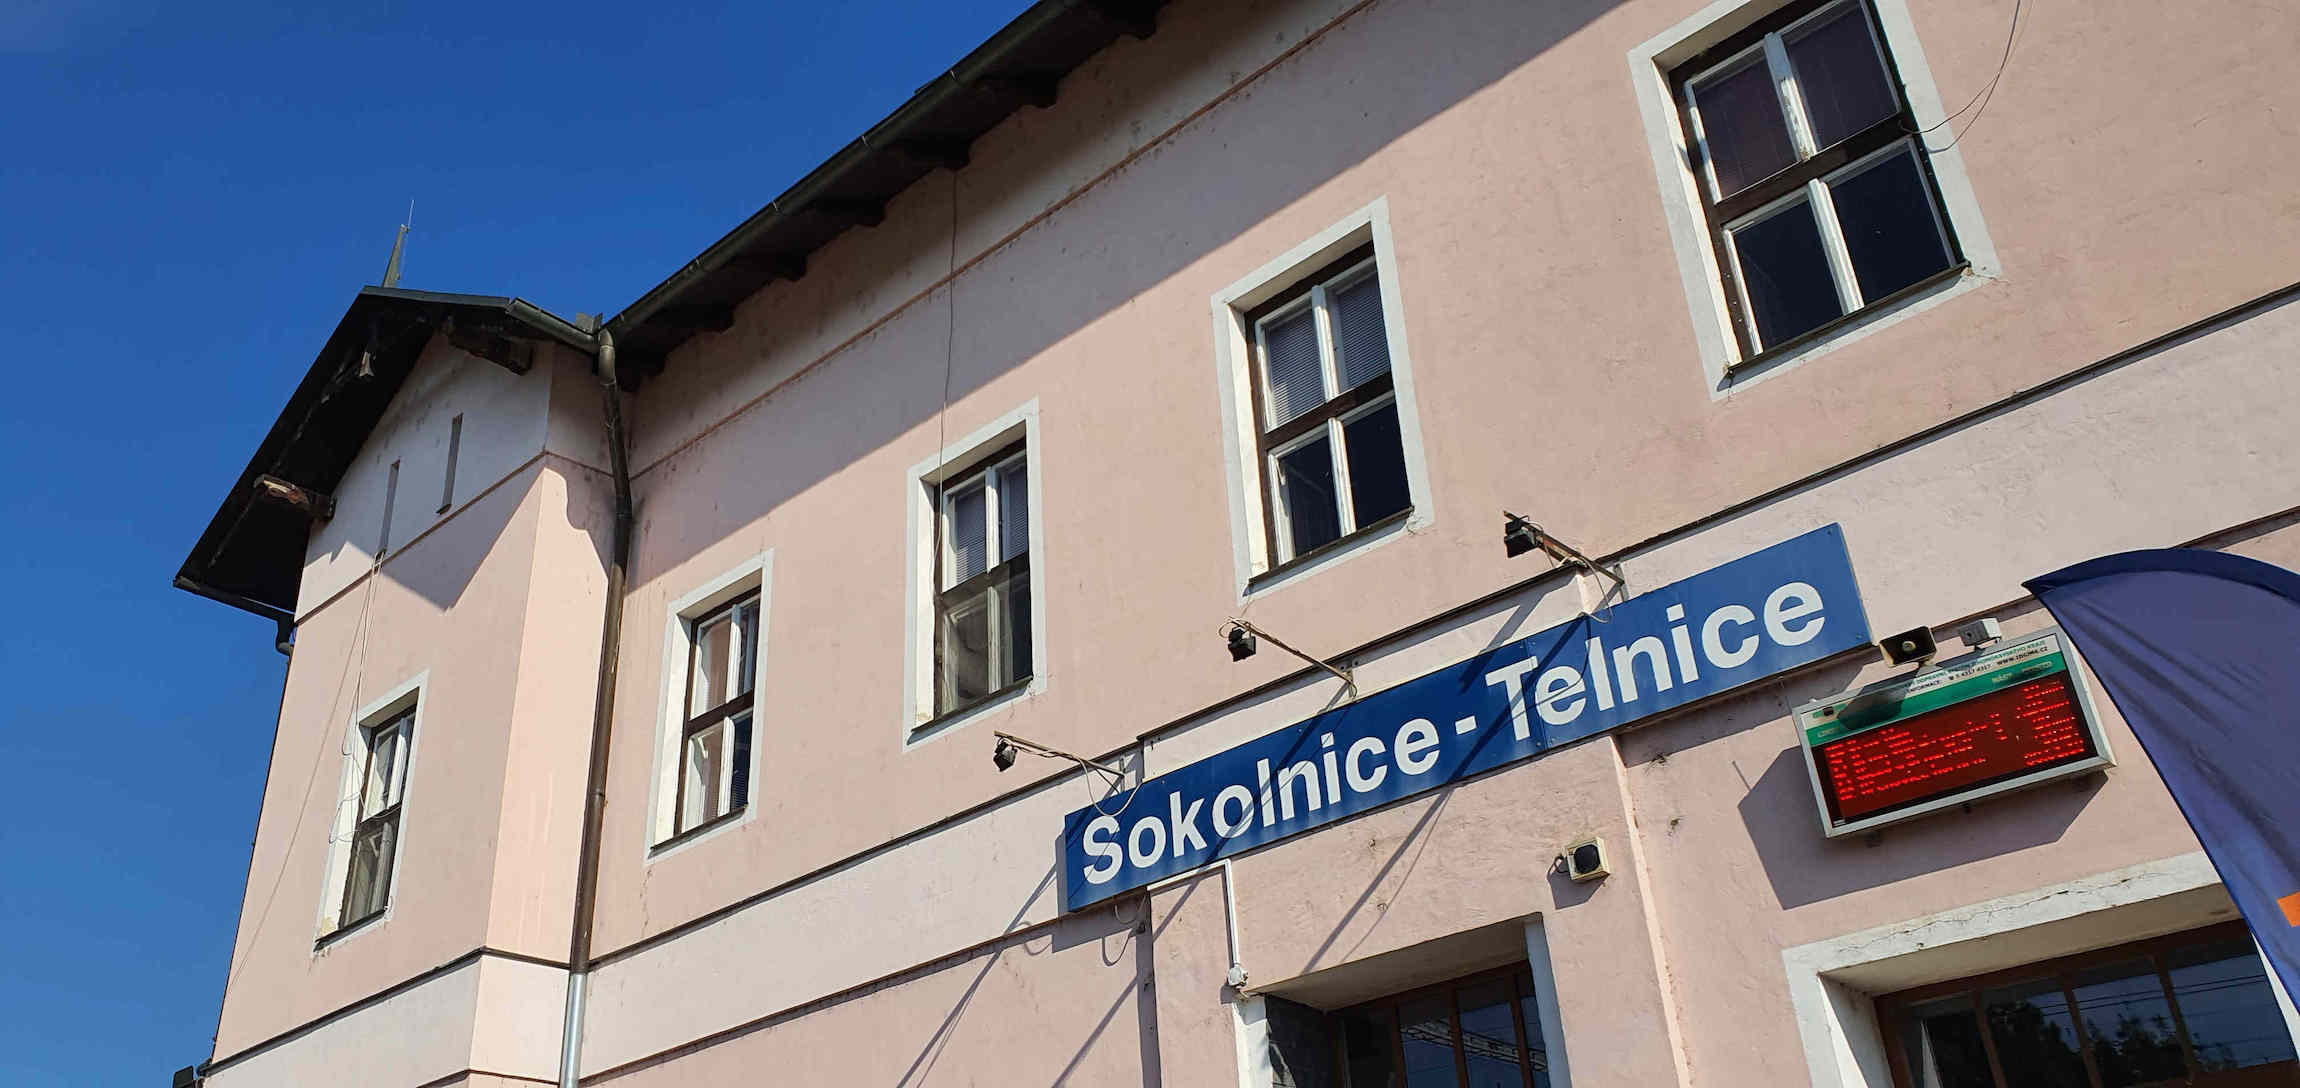 Zahájení rekonstrukce žel. stanice Sokolnice-Telnice